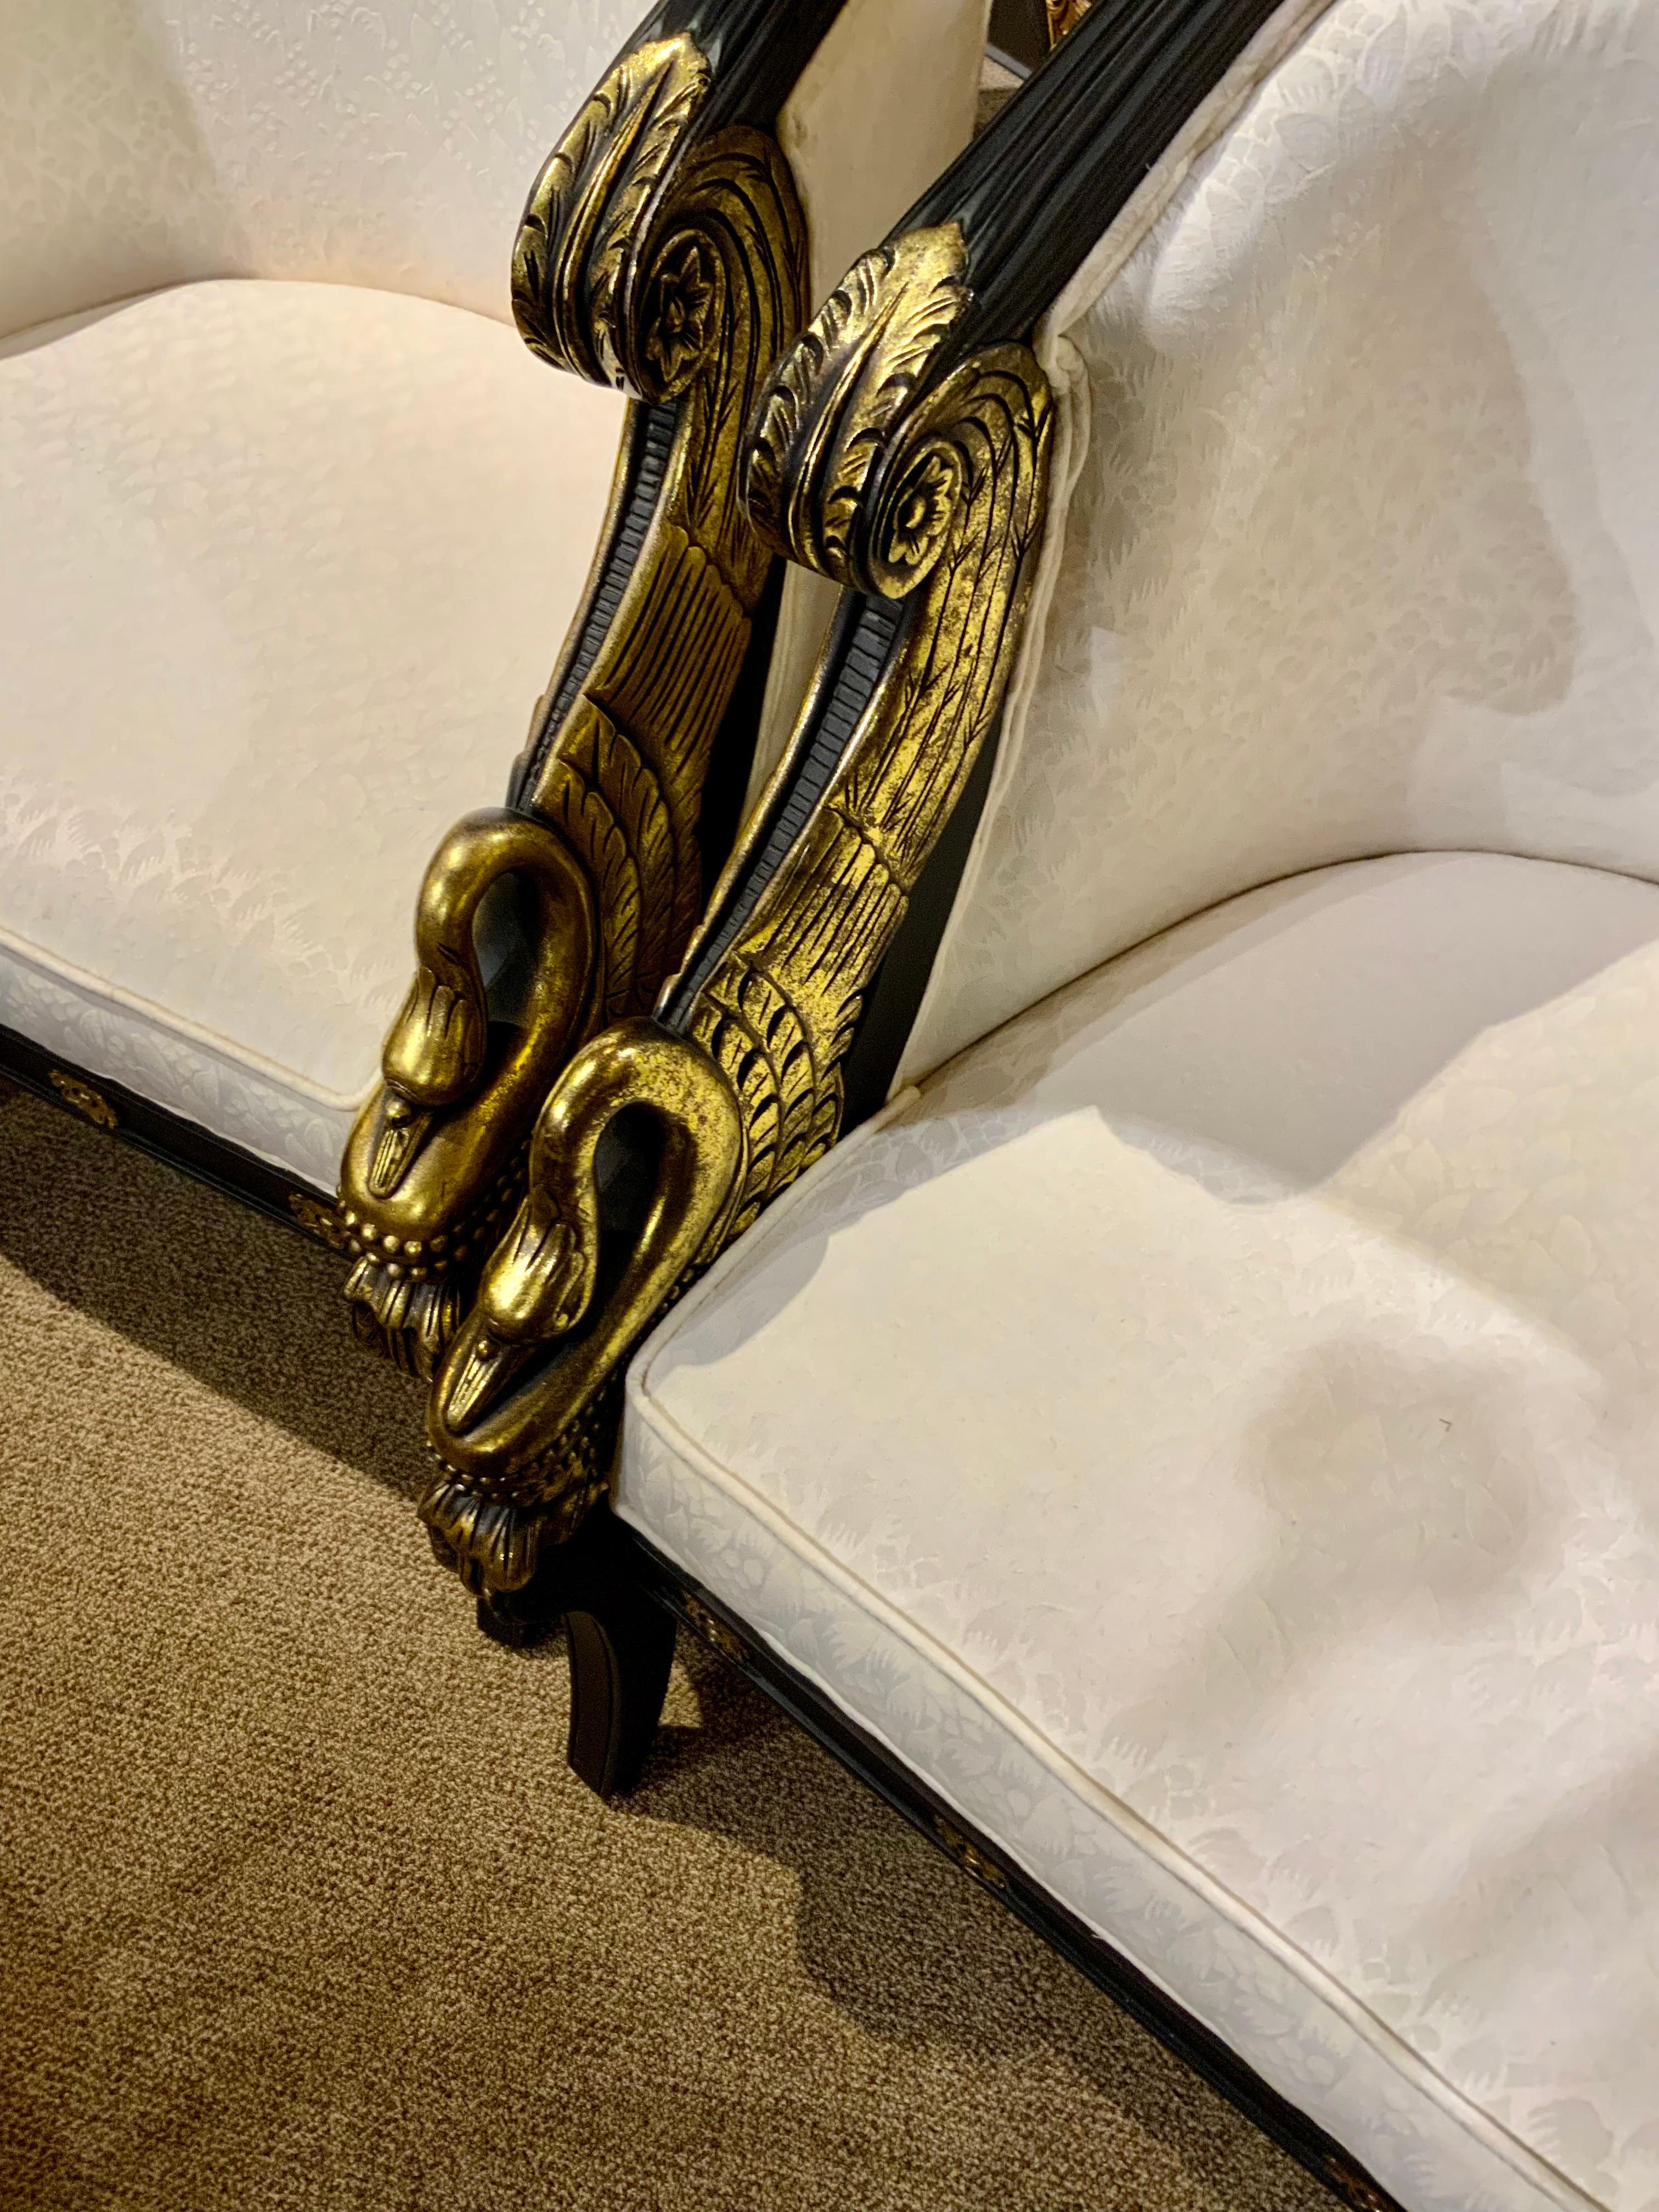 Zwei hübsche Stühle im Empire-Stil aus dem späten 20. Jahrhundert.
Diese Stühle haben eine geschwungene und geriffelte Rückenlehne, die Armlehne ist vergoldet.
Fronten in Form von Schwänen, die Sitzrahmen mit vergoldeten Rosetten, erhöht.
Auf